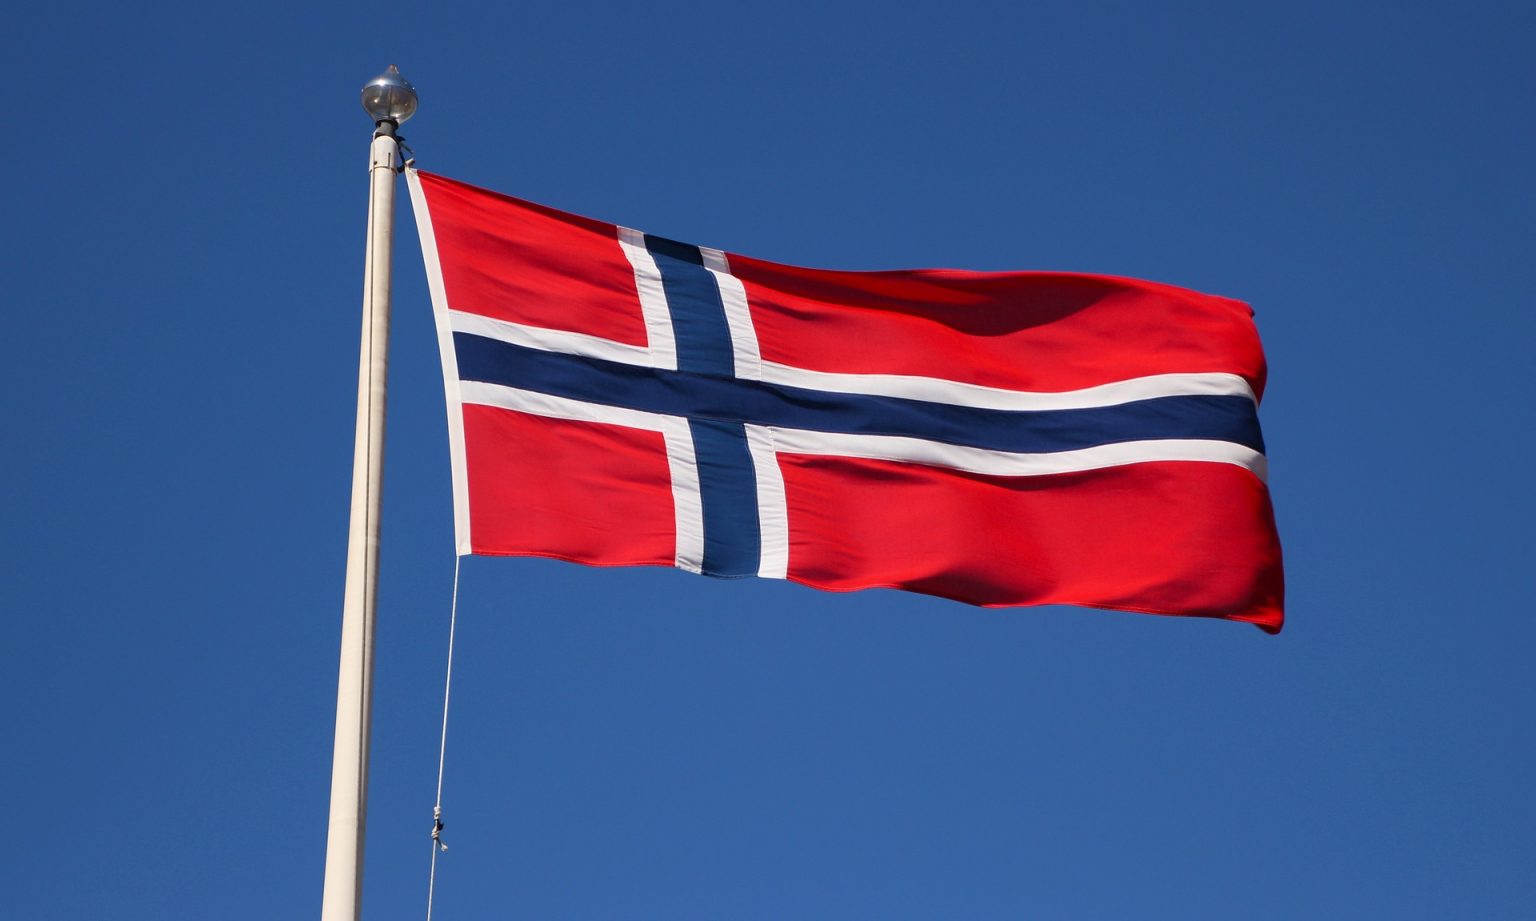 Norvešku napustila 82 preduzetnika “teška” 4,3 milijarde dolara